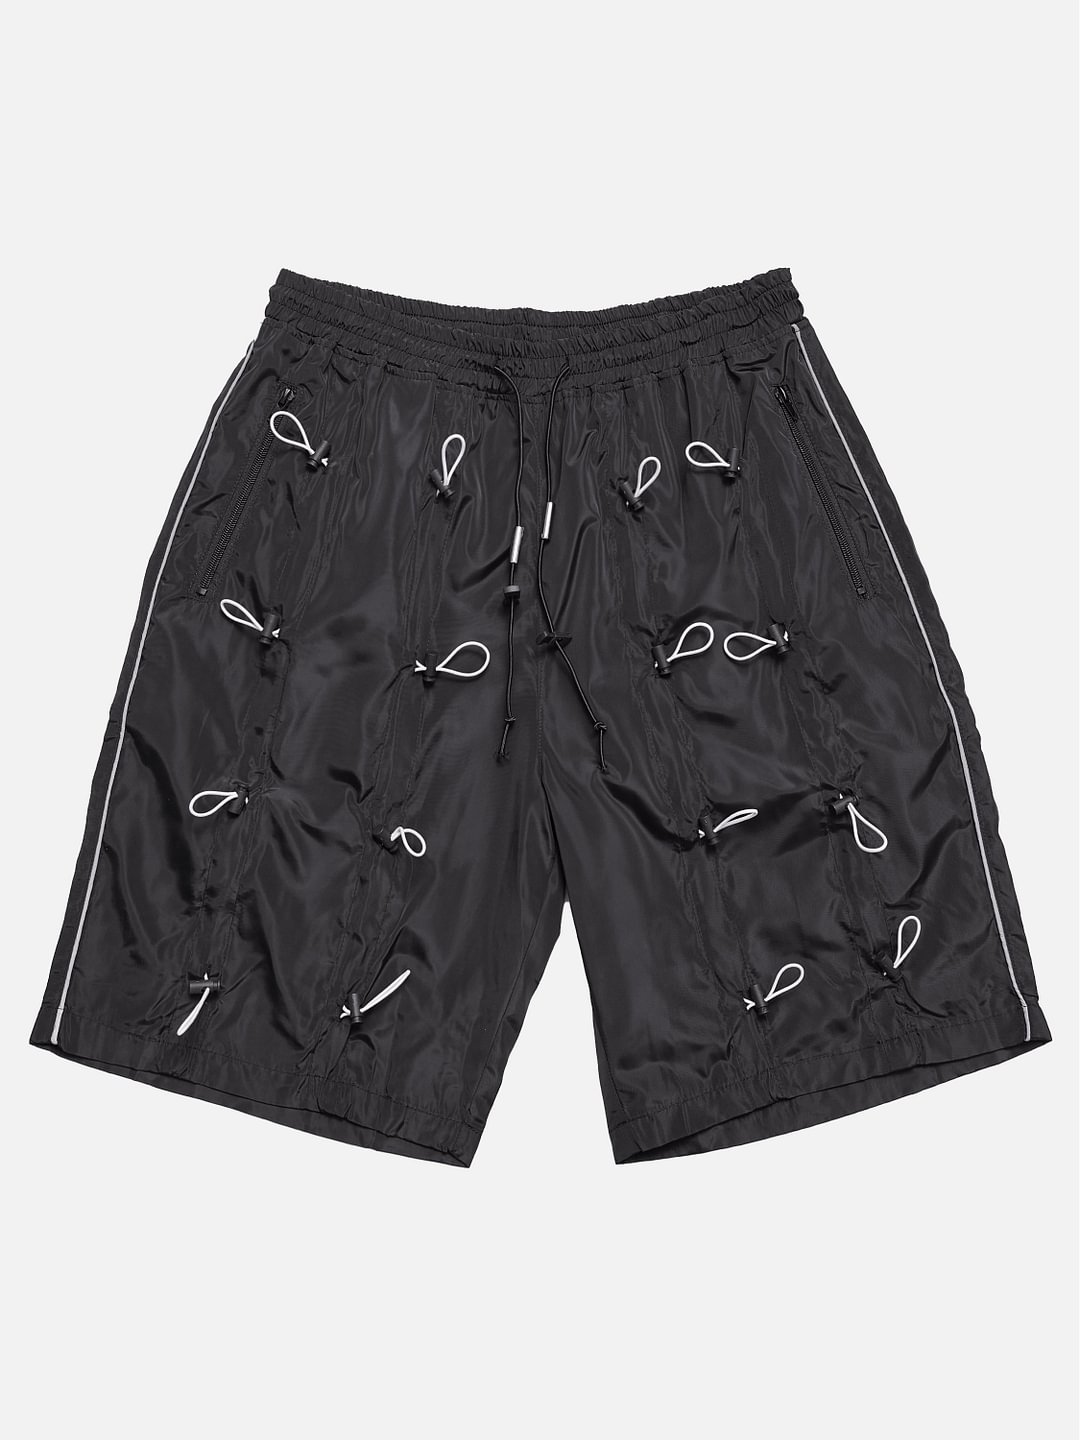 Drawstring Shorts / Techwear Club / Techwear